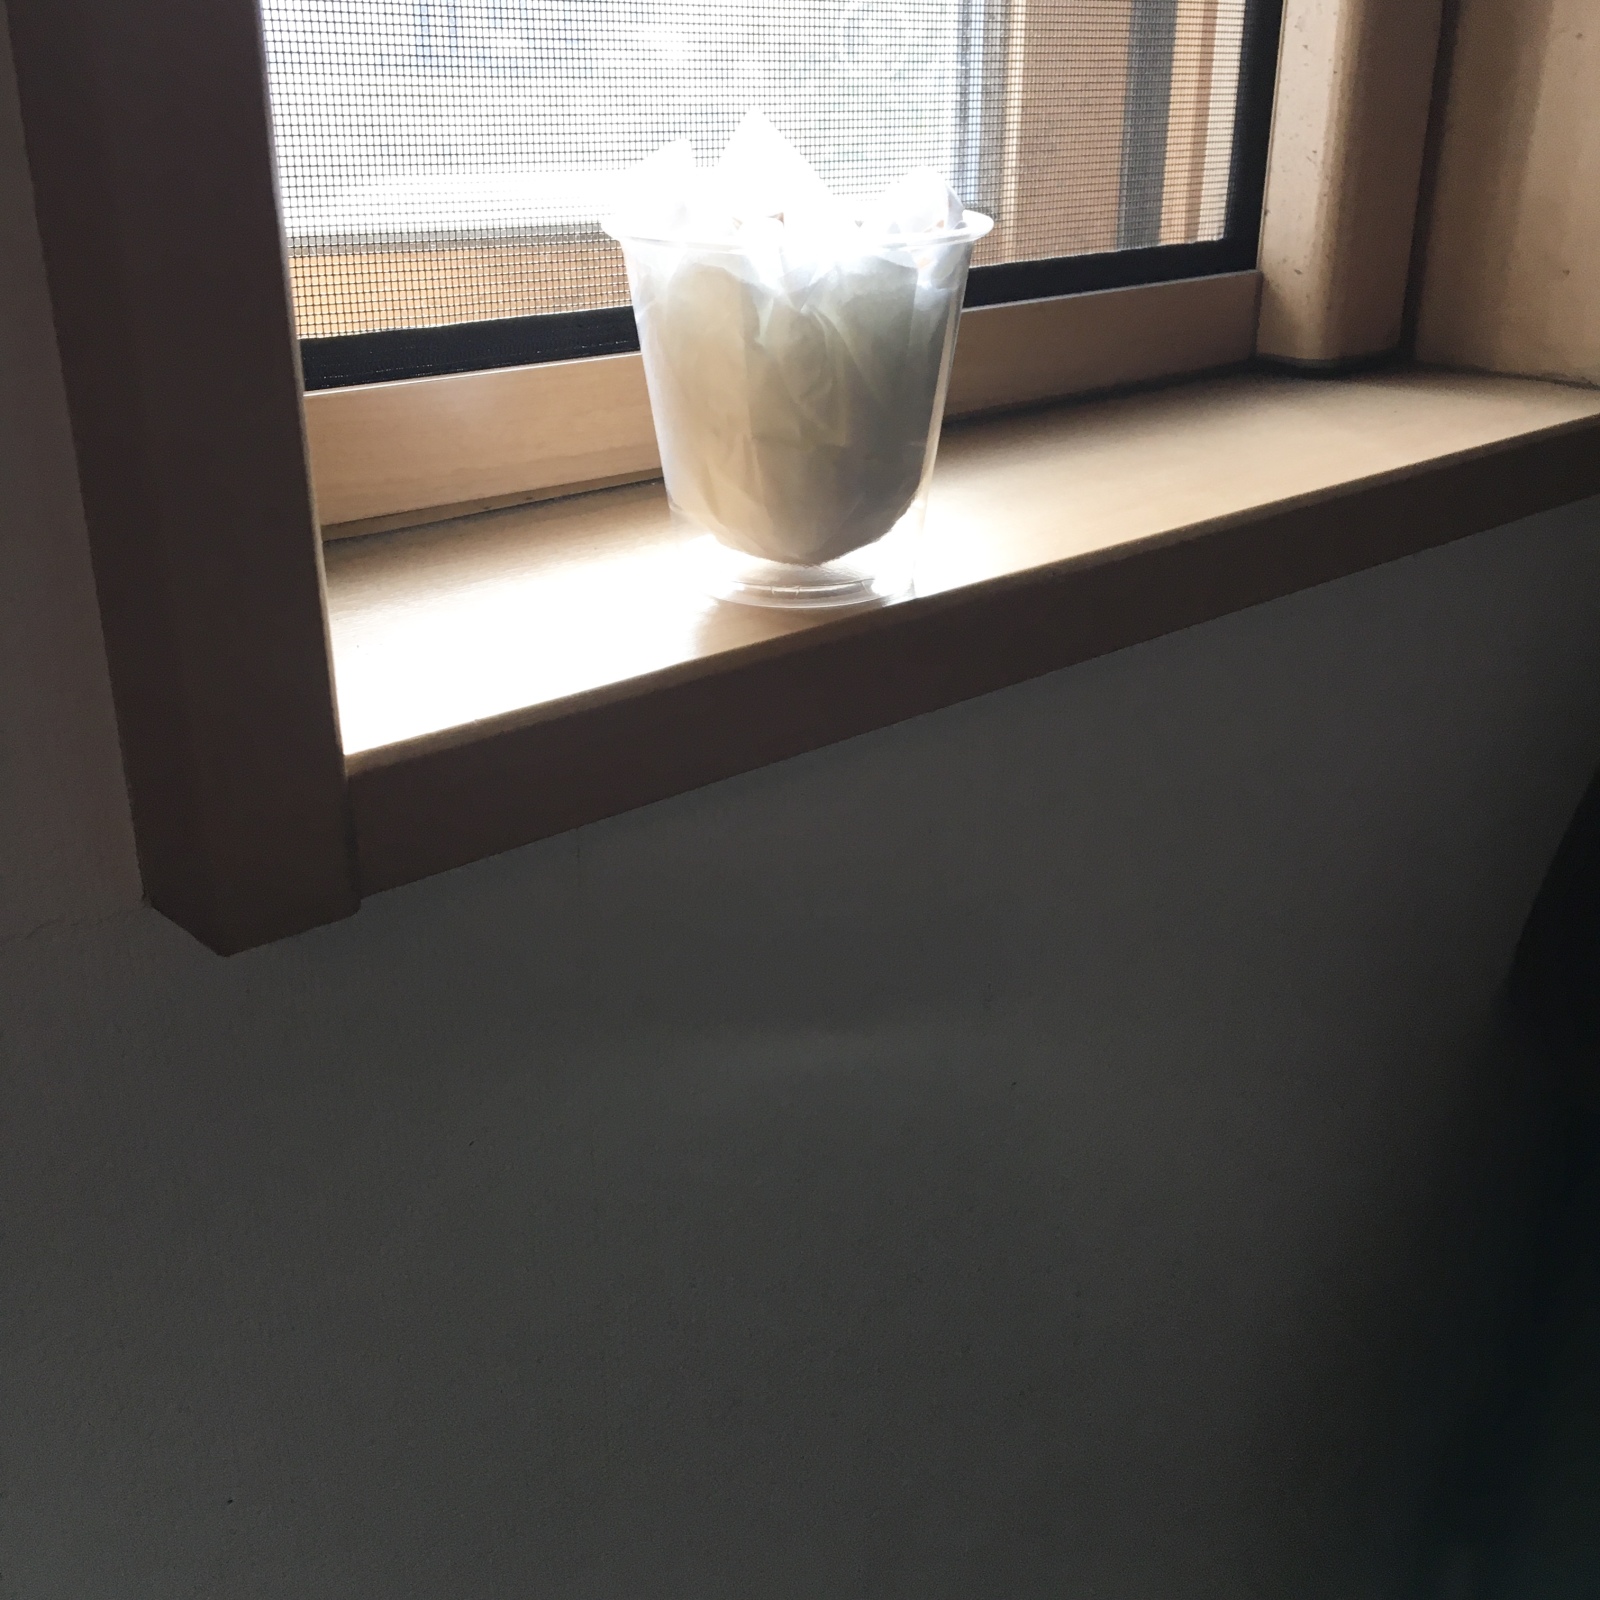 窓際でかわかすプラスチックカップ